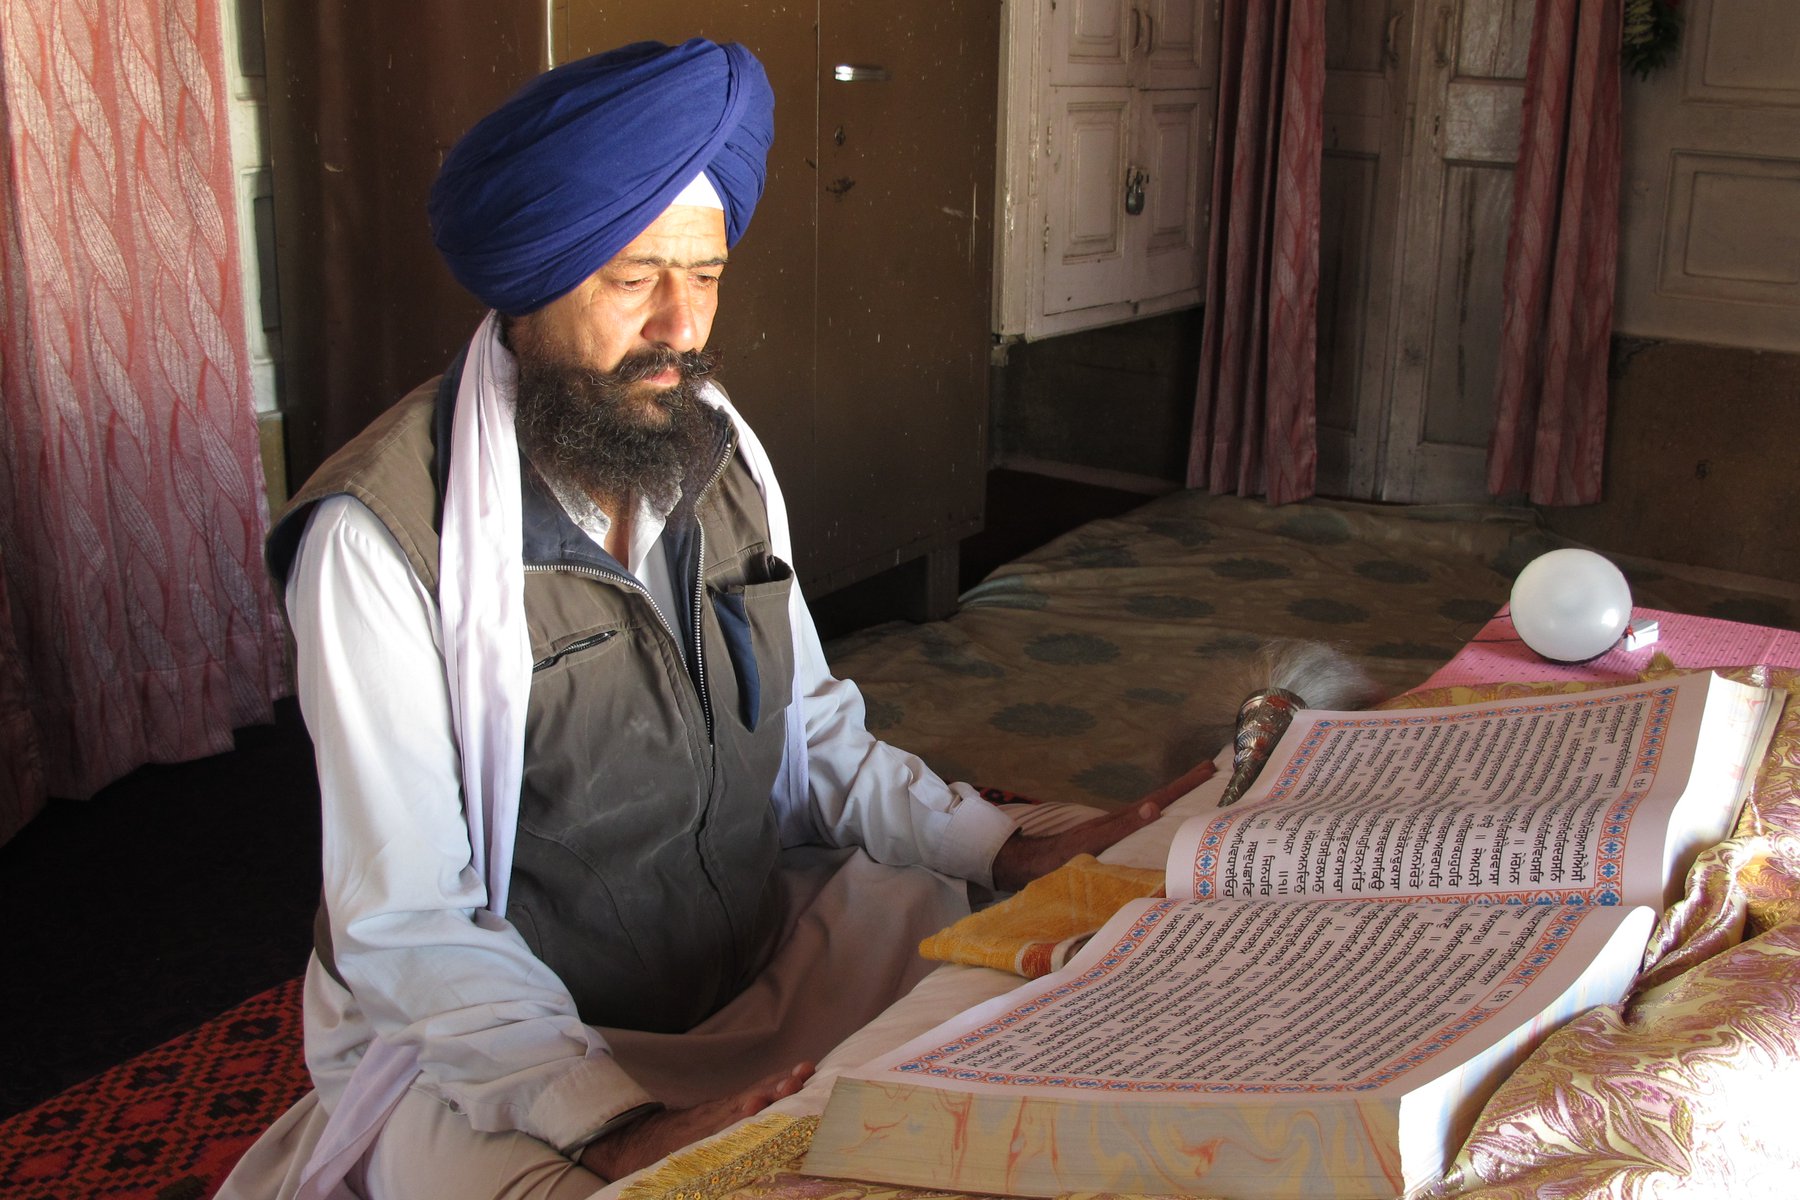 Sikh läser ur en helig skrift inne i Gyllene templet